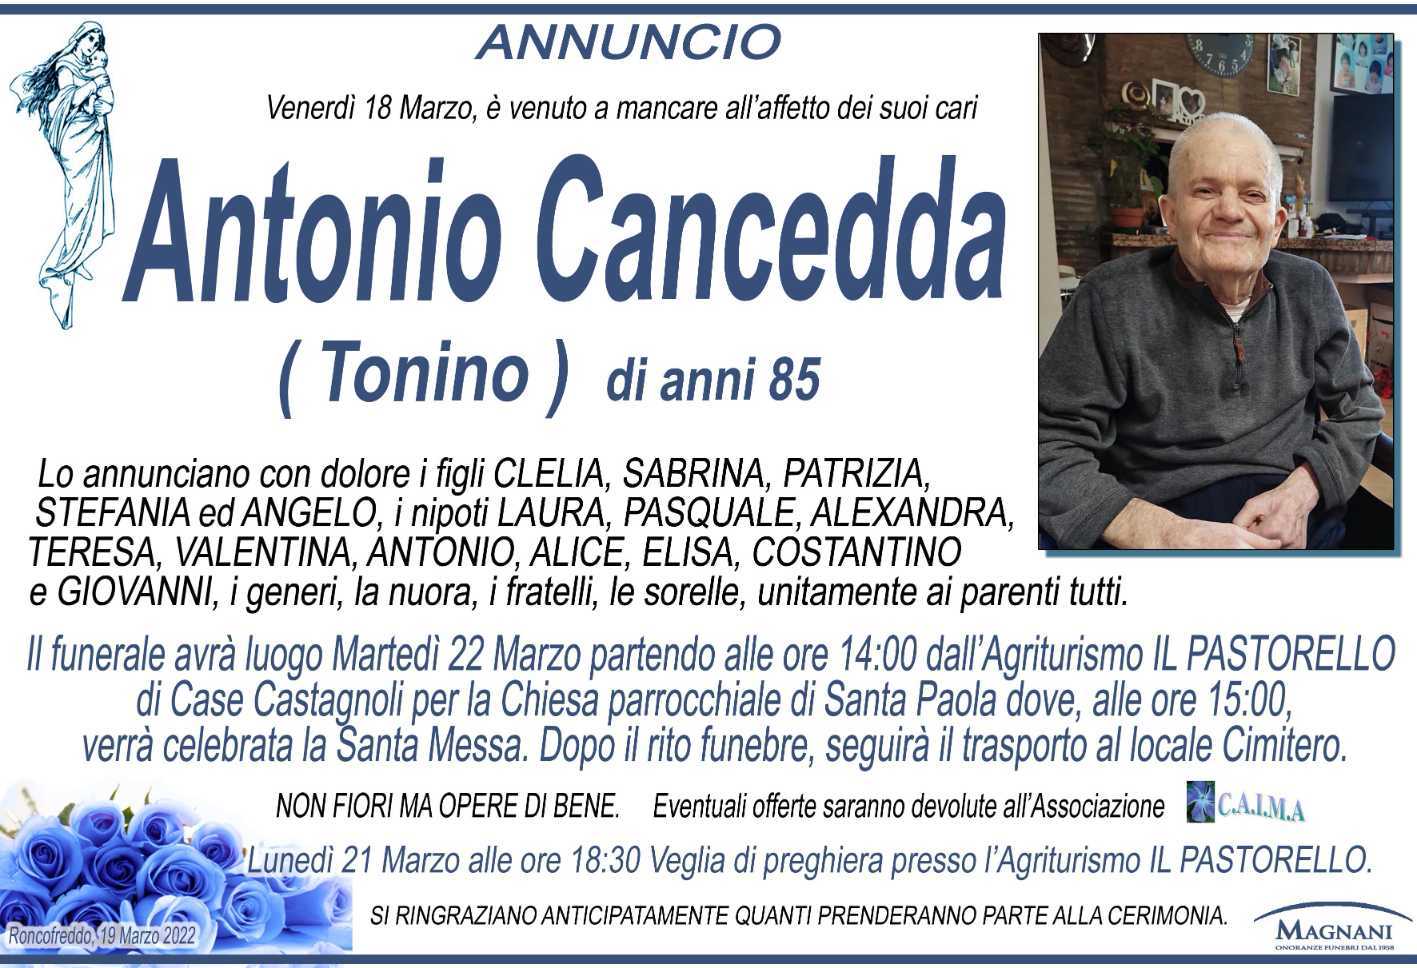 Antonio Cancedda